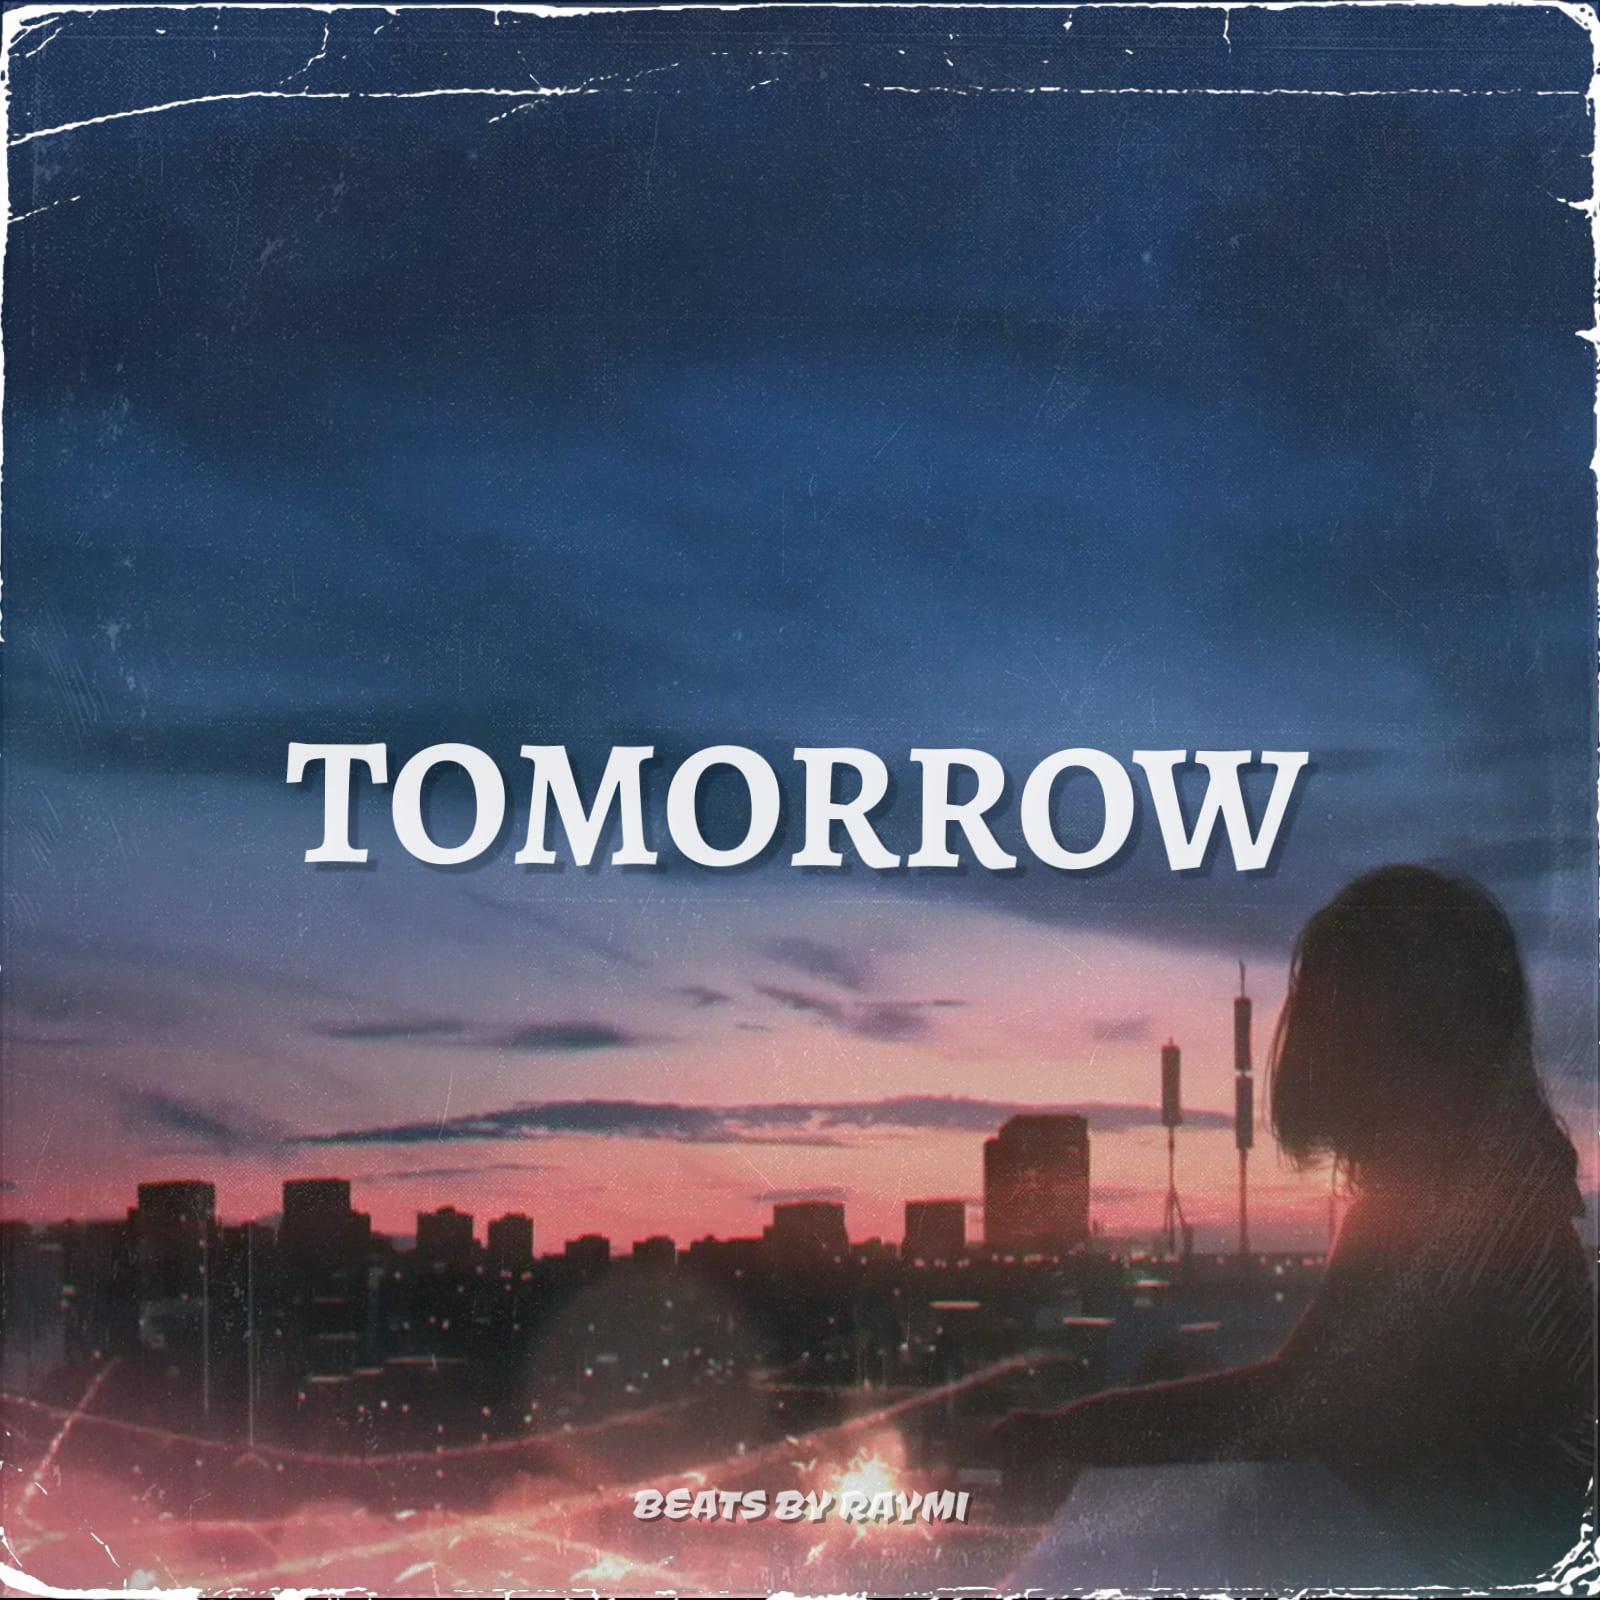 обложка бита, Raymi, музыка, cover, Tomorrow (легкий, энергичный бит)